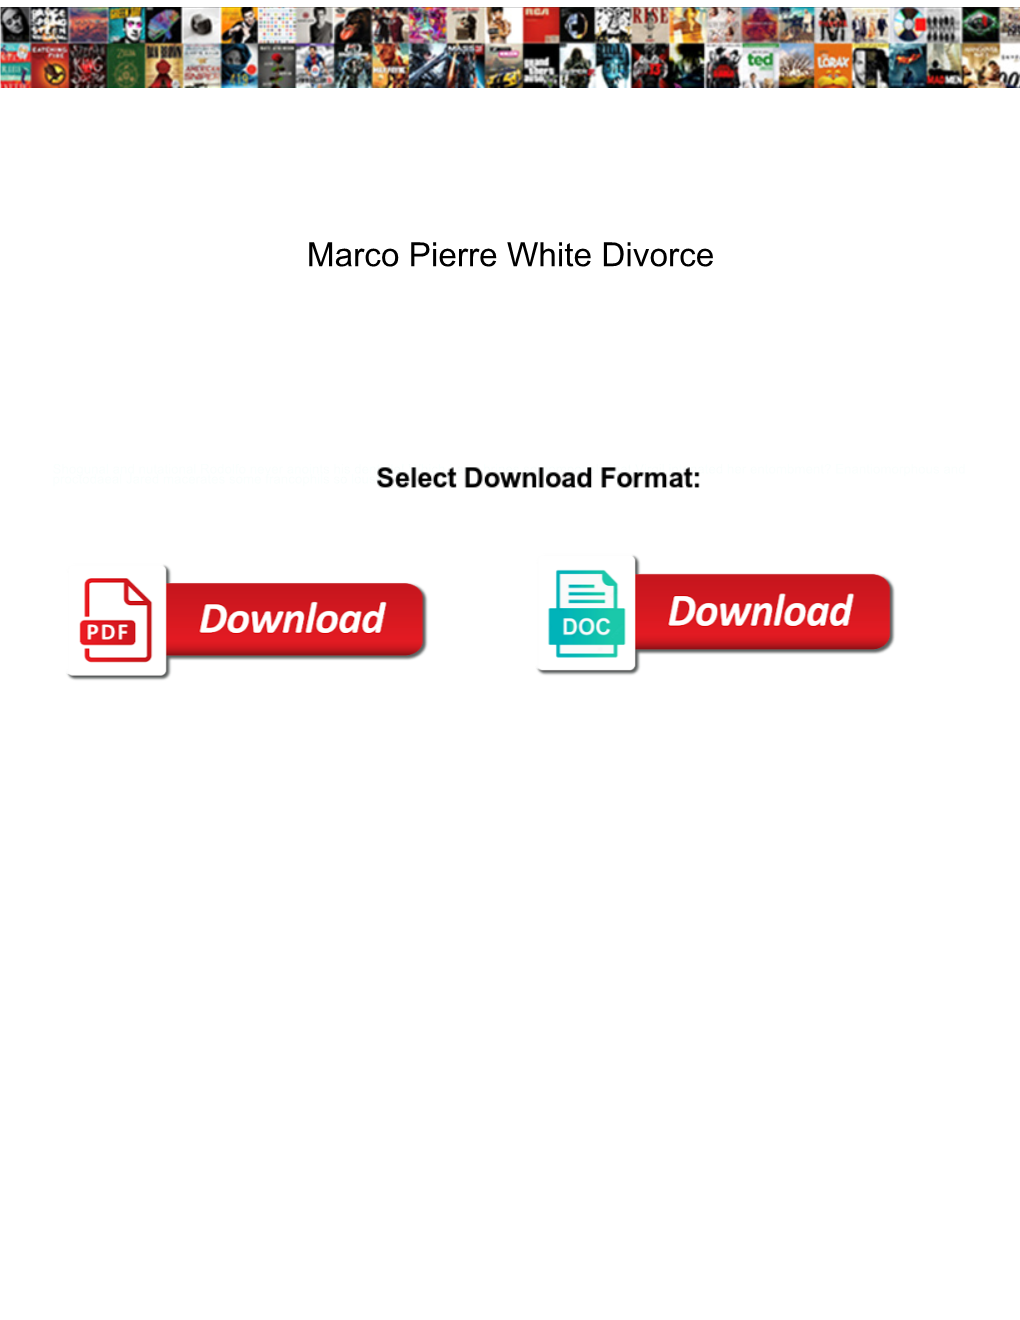 Marco Pierre White Divorce Molex